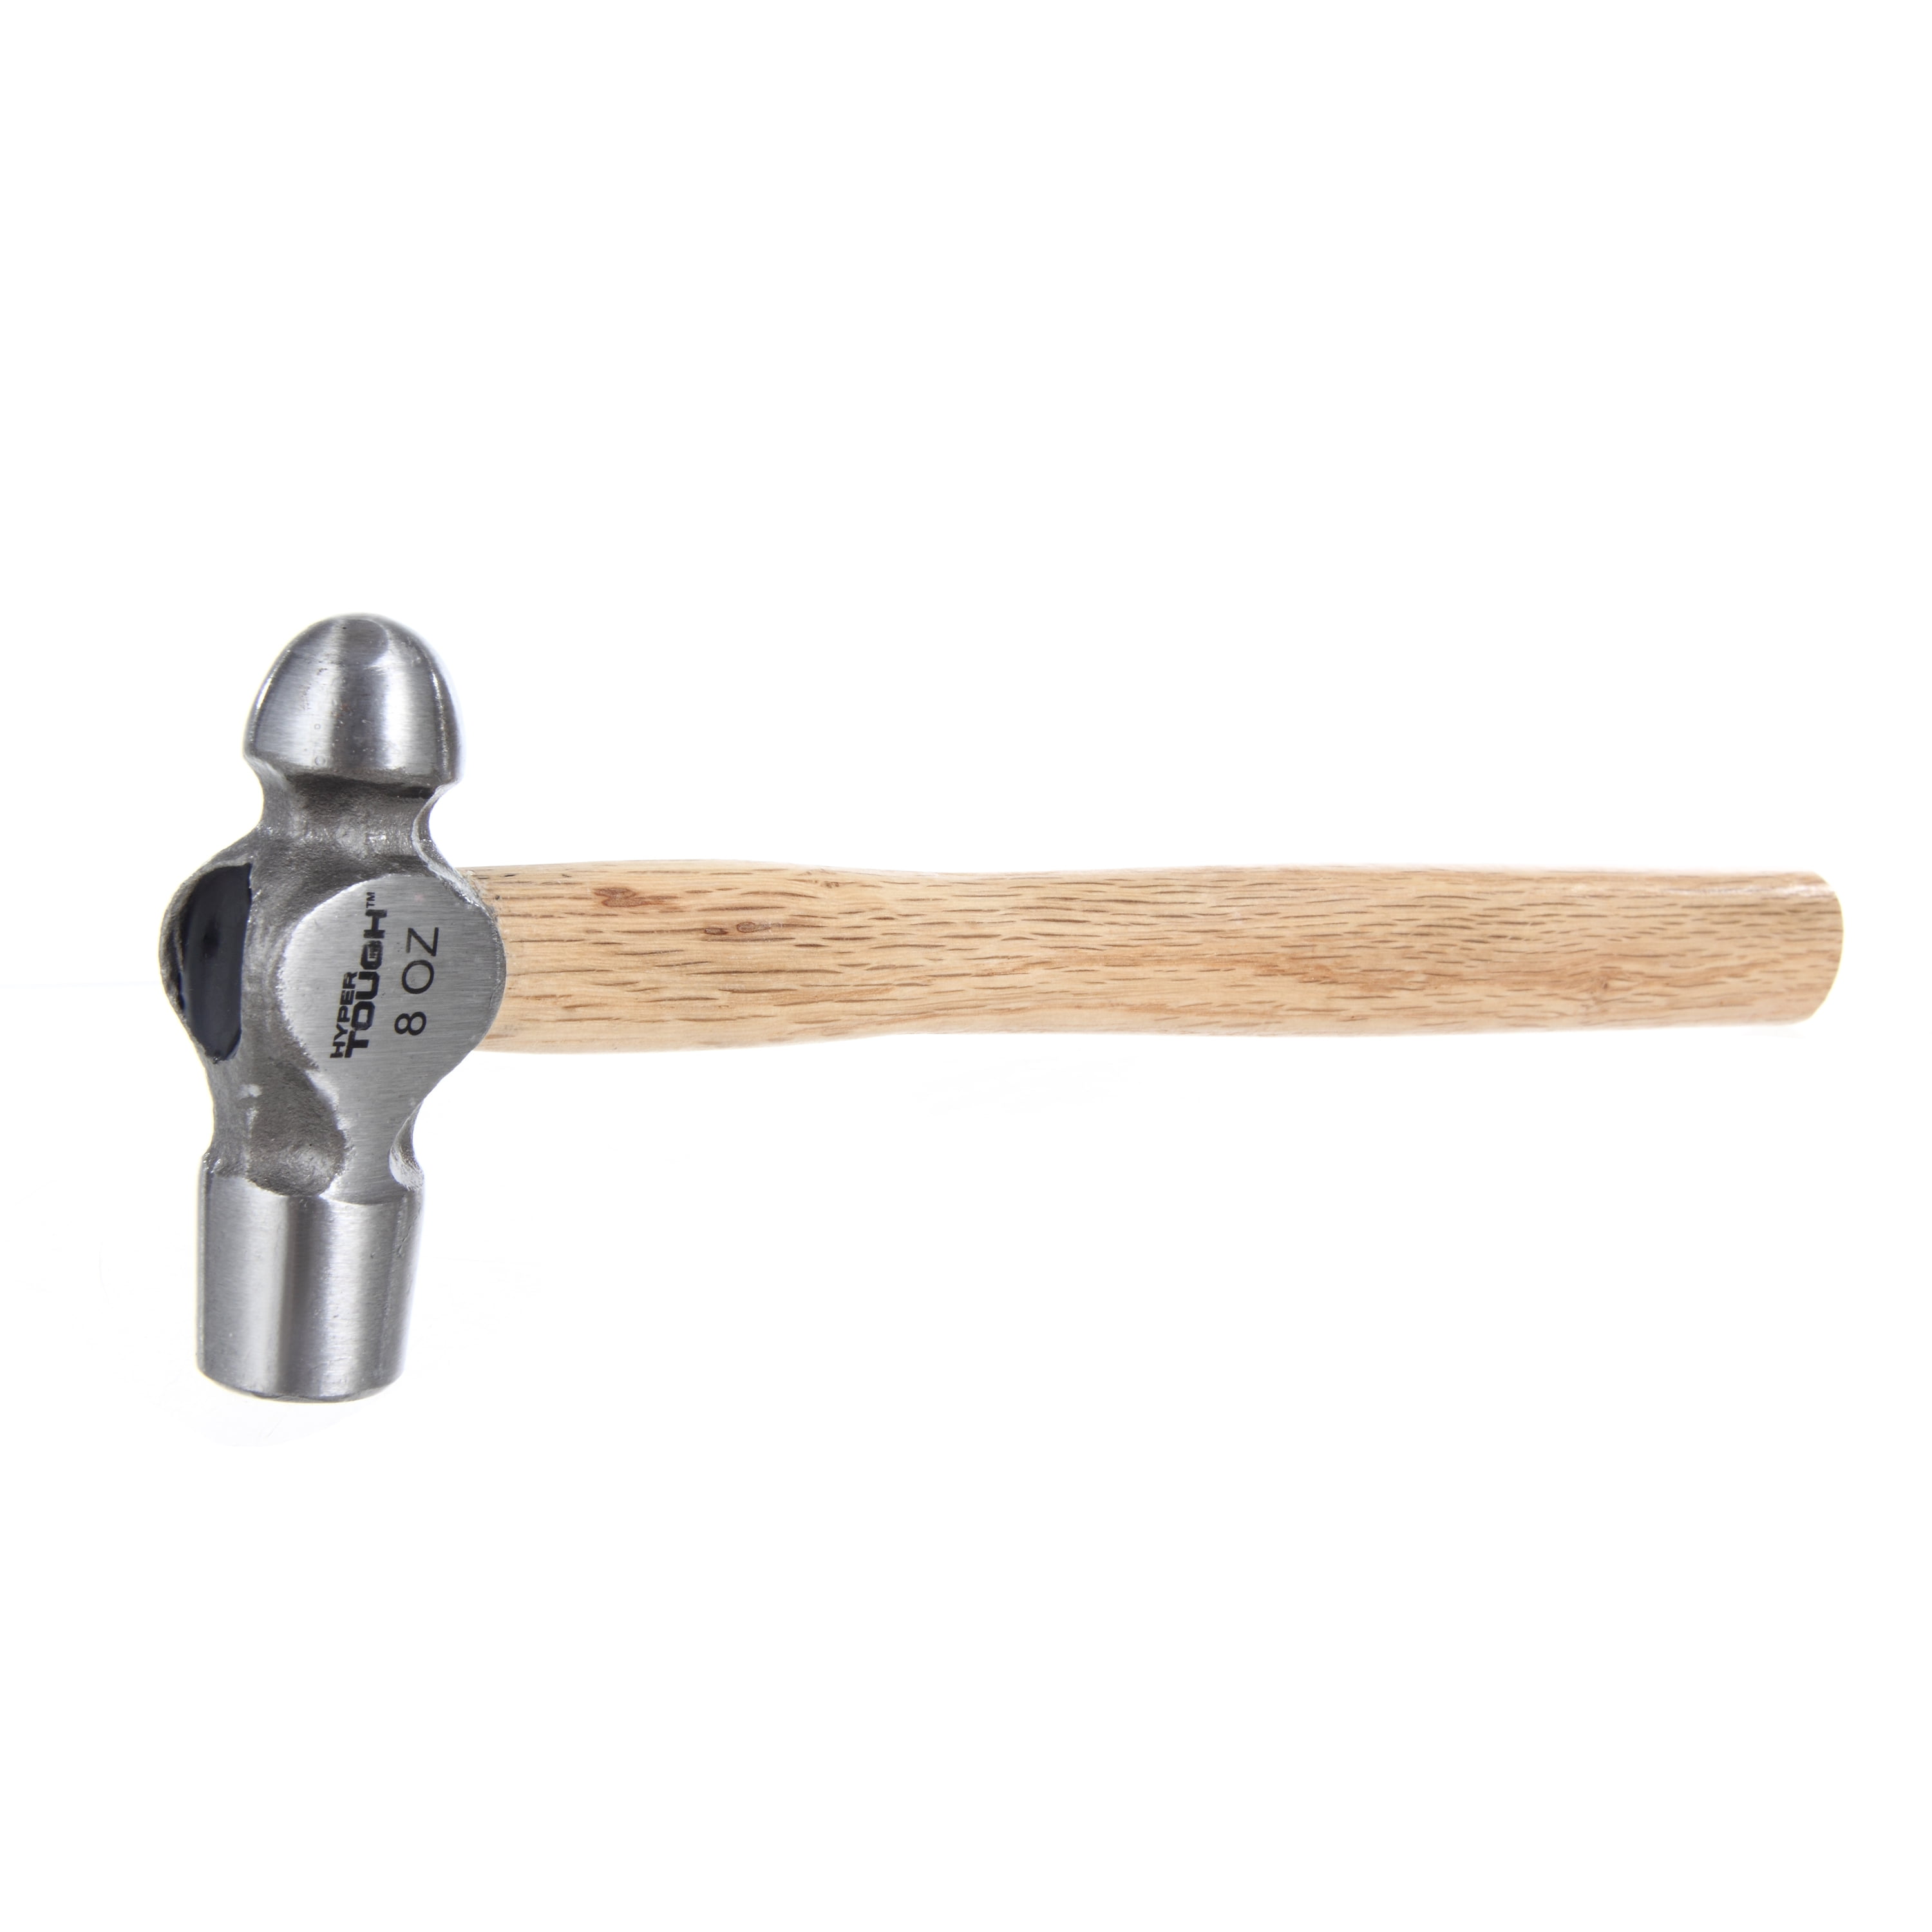 Hyper Tough 8 Ounce Ball Peen Wood Handle Hammer TH20203Z 